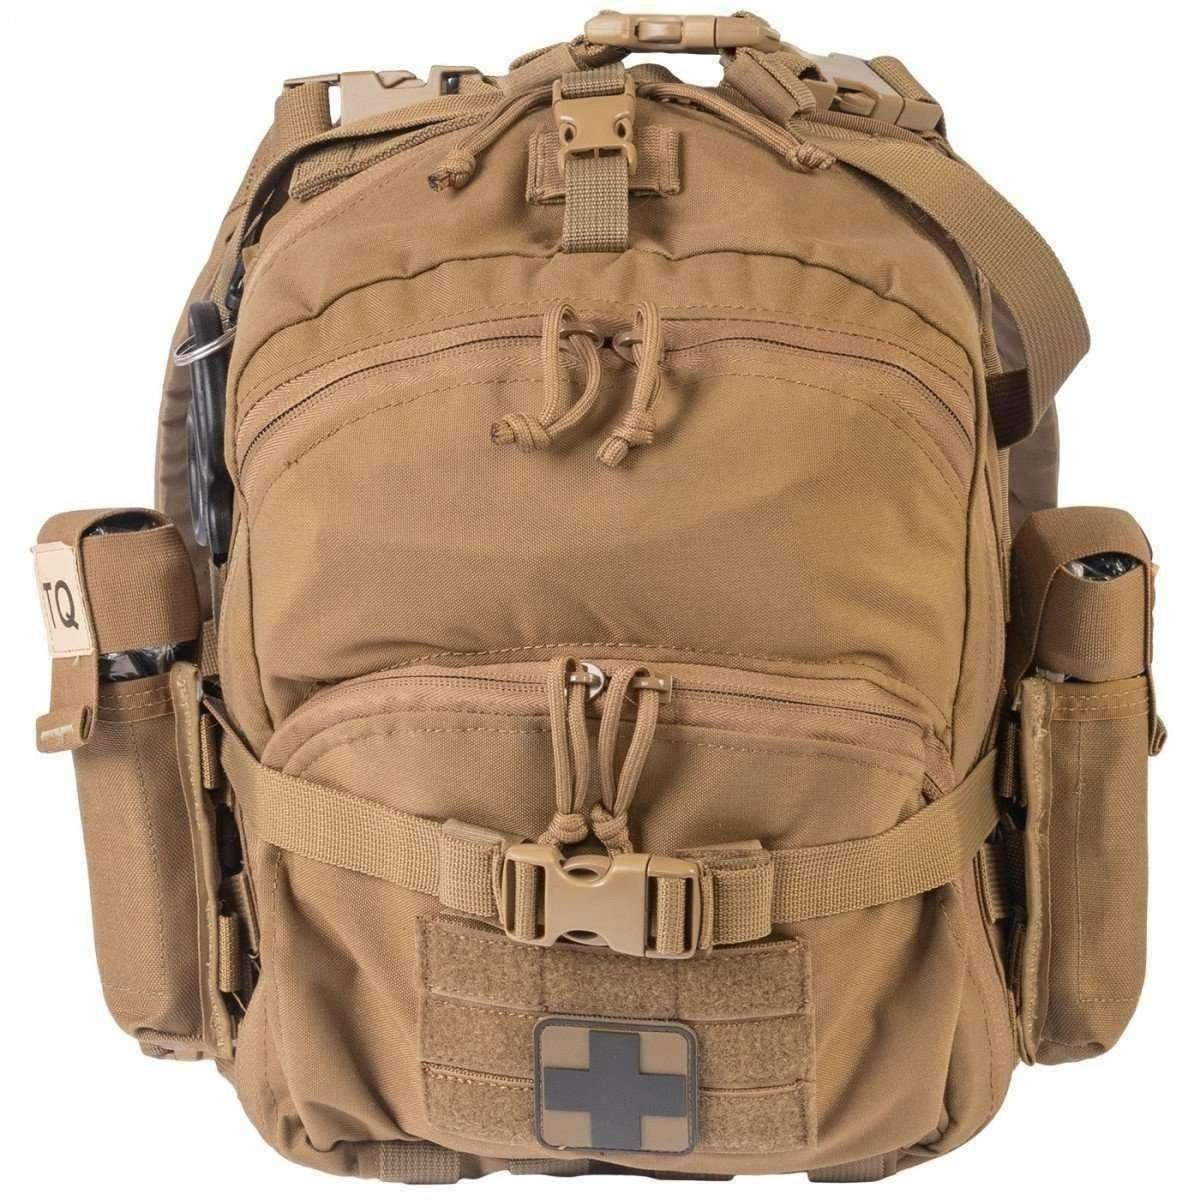 Mini-Medic Bag Kit - Vendor